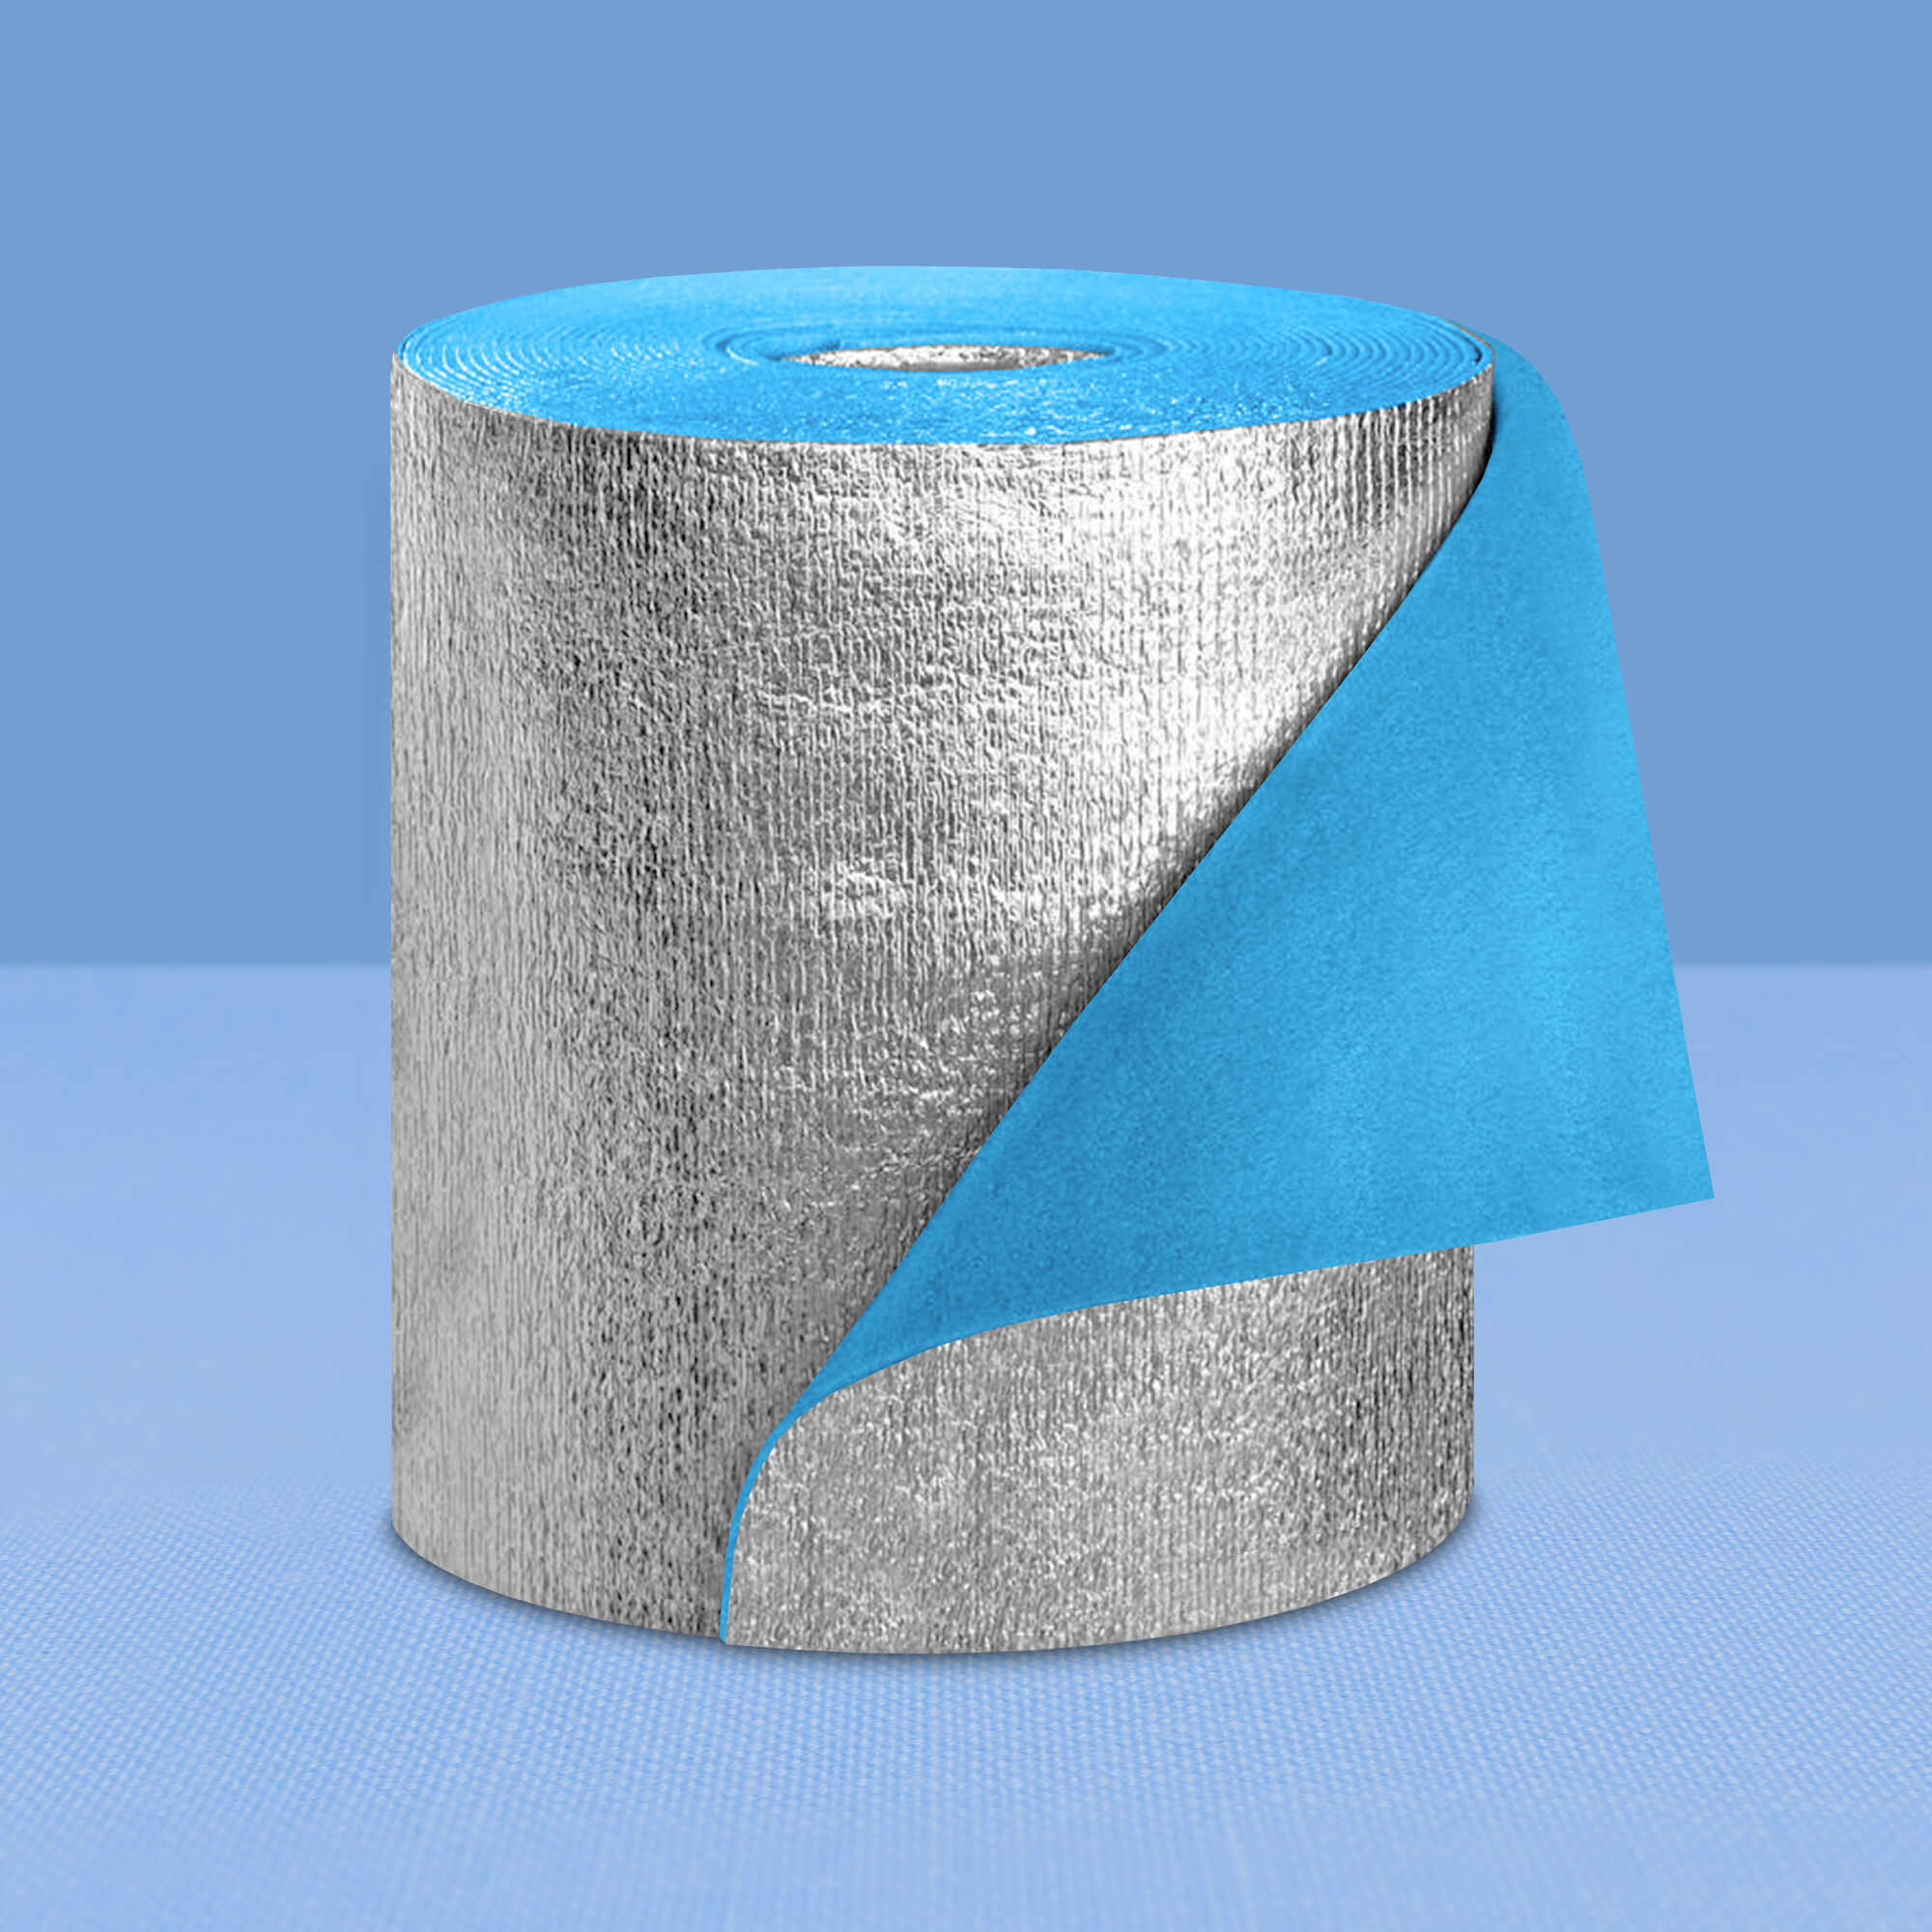 фото Теплоизоляция рулонная самоклеющаяся магнофлекс оптим тип с-0.6, толщина 5 мм (18 кв.м.)